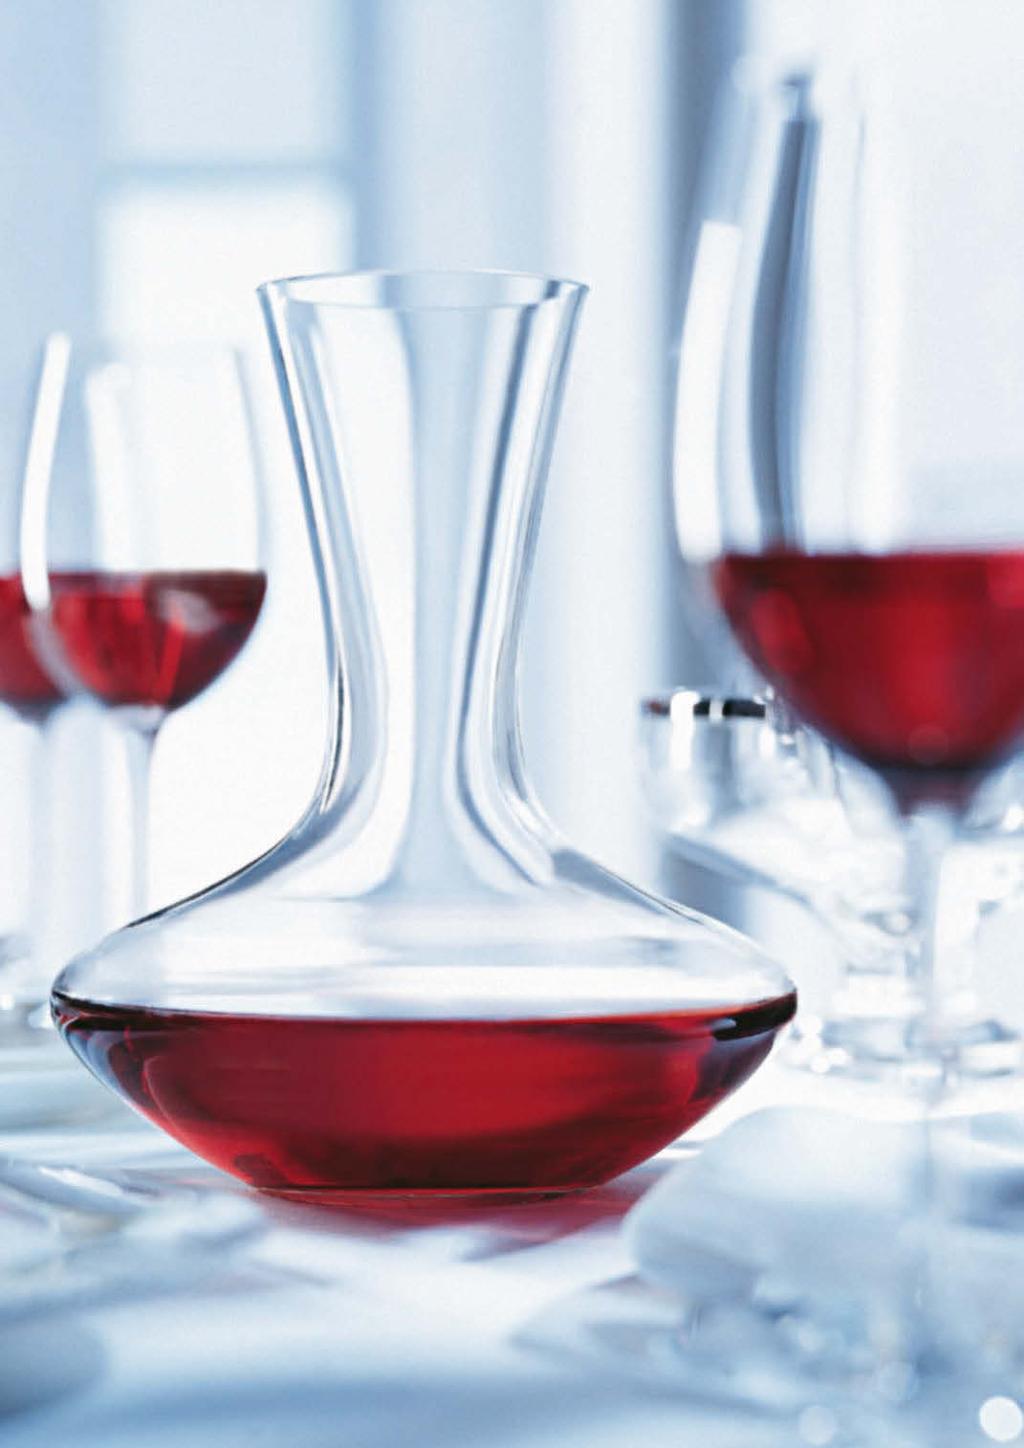 Zróżnicowane rozmiary poszczególnych stref w połączeniu z dowolną regulacją temperatury sprawiają, że winiarki te są odpowiednie do przechowywania niemal każdego rodzaju wina.